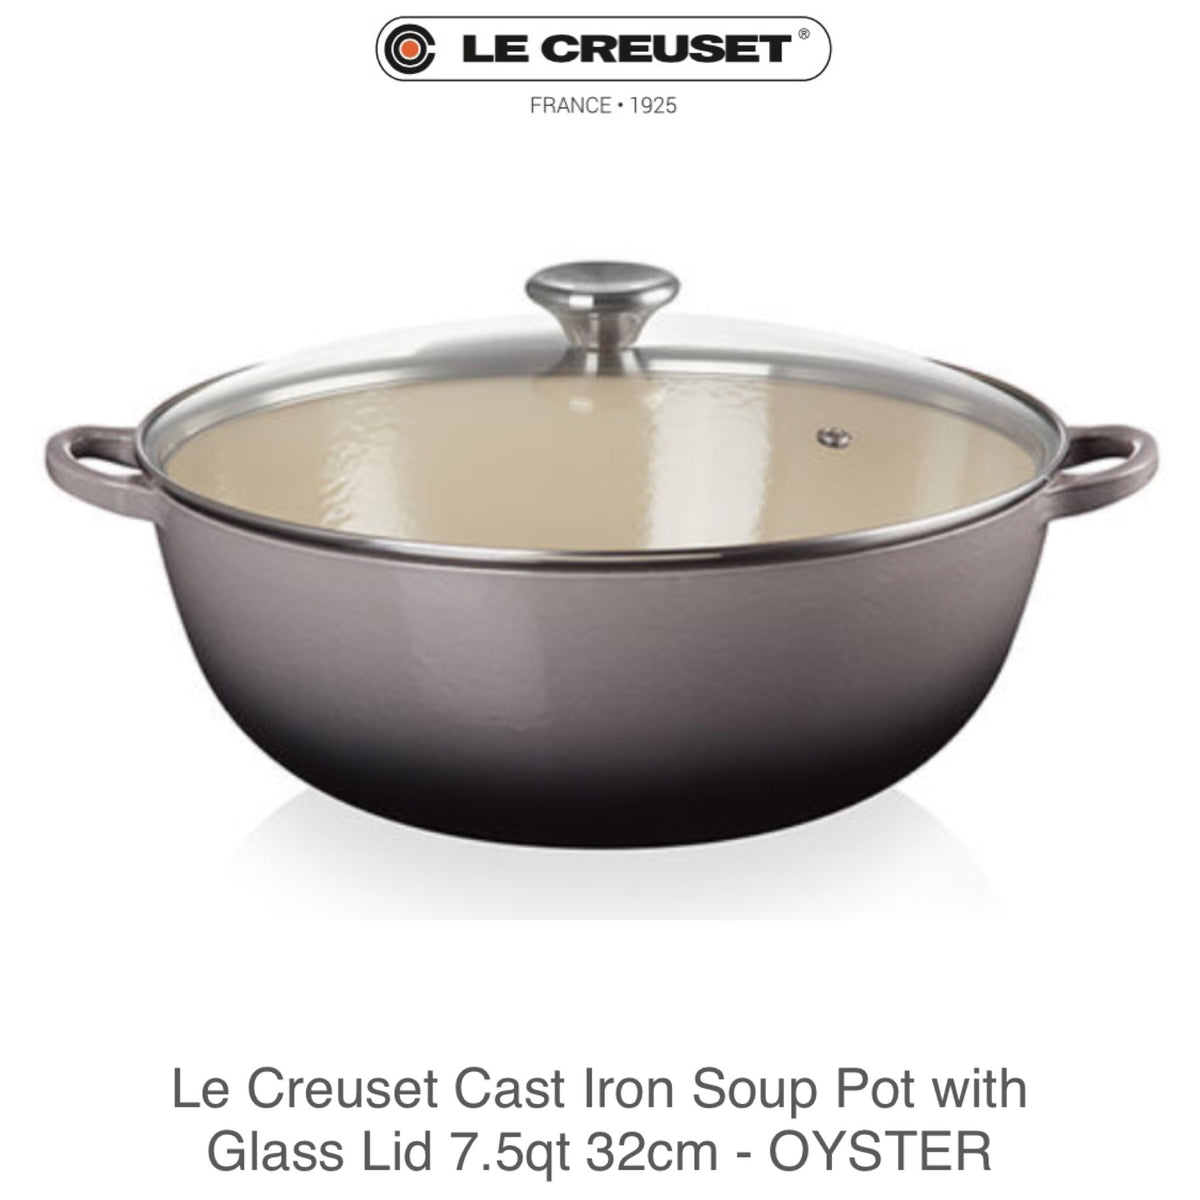 Le Creuset 3.5 Qt. Cast Iron Soup Pot with Lid